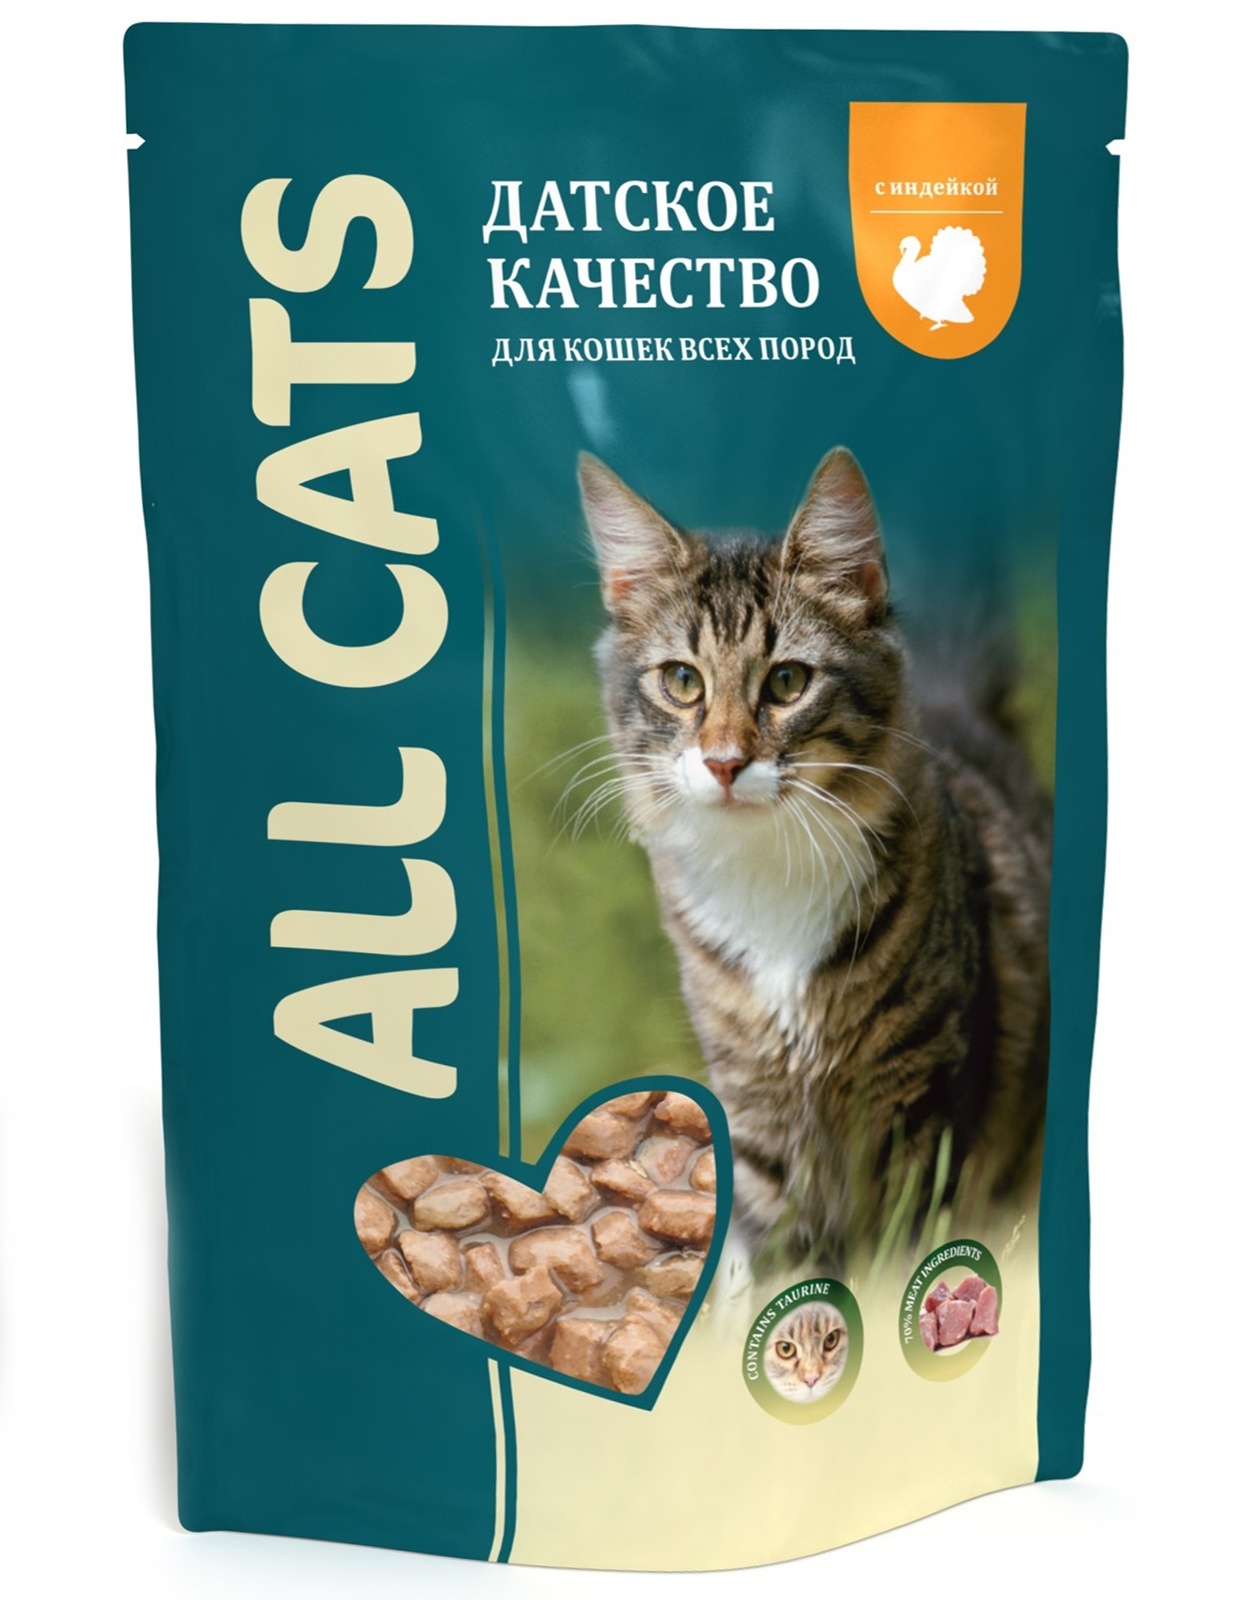 All Cats пауч с тефтельками из индейки в соусе для кошек (85 г) 